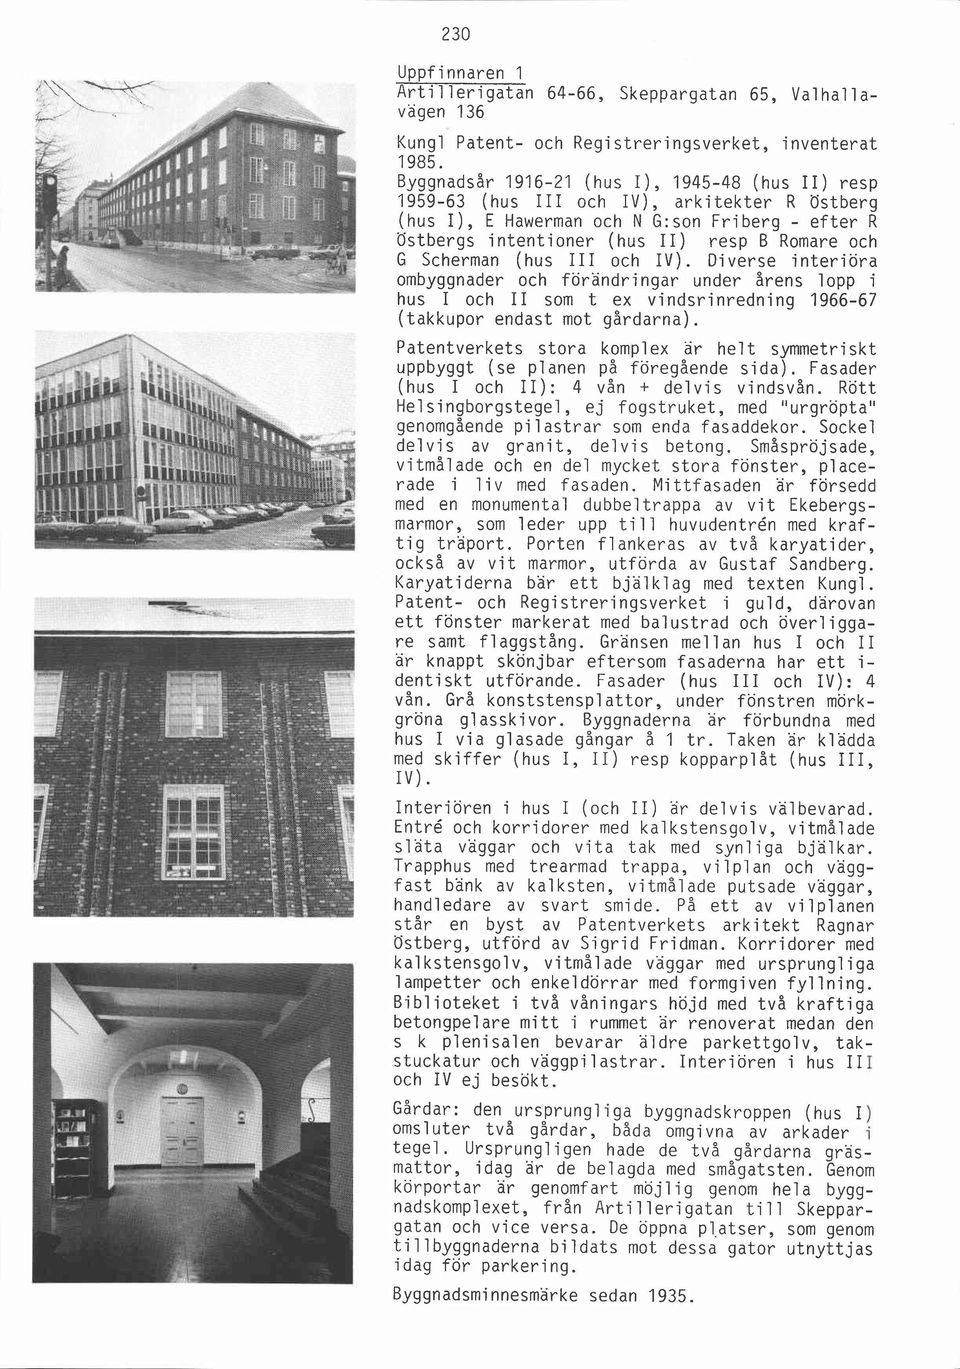 Diverse interiöra ombyggnader och förändringar under årens lopp i hus I och II som t ex vindsrinredning 1966-67 (takkupor endast mot gårdarna).